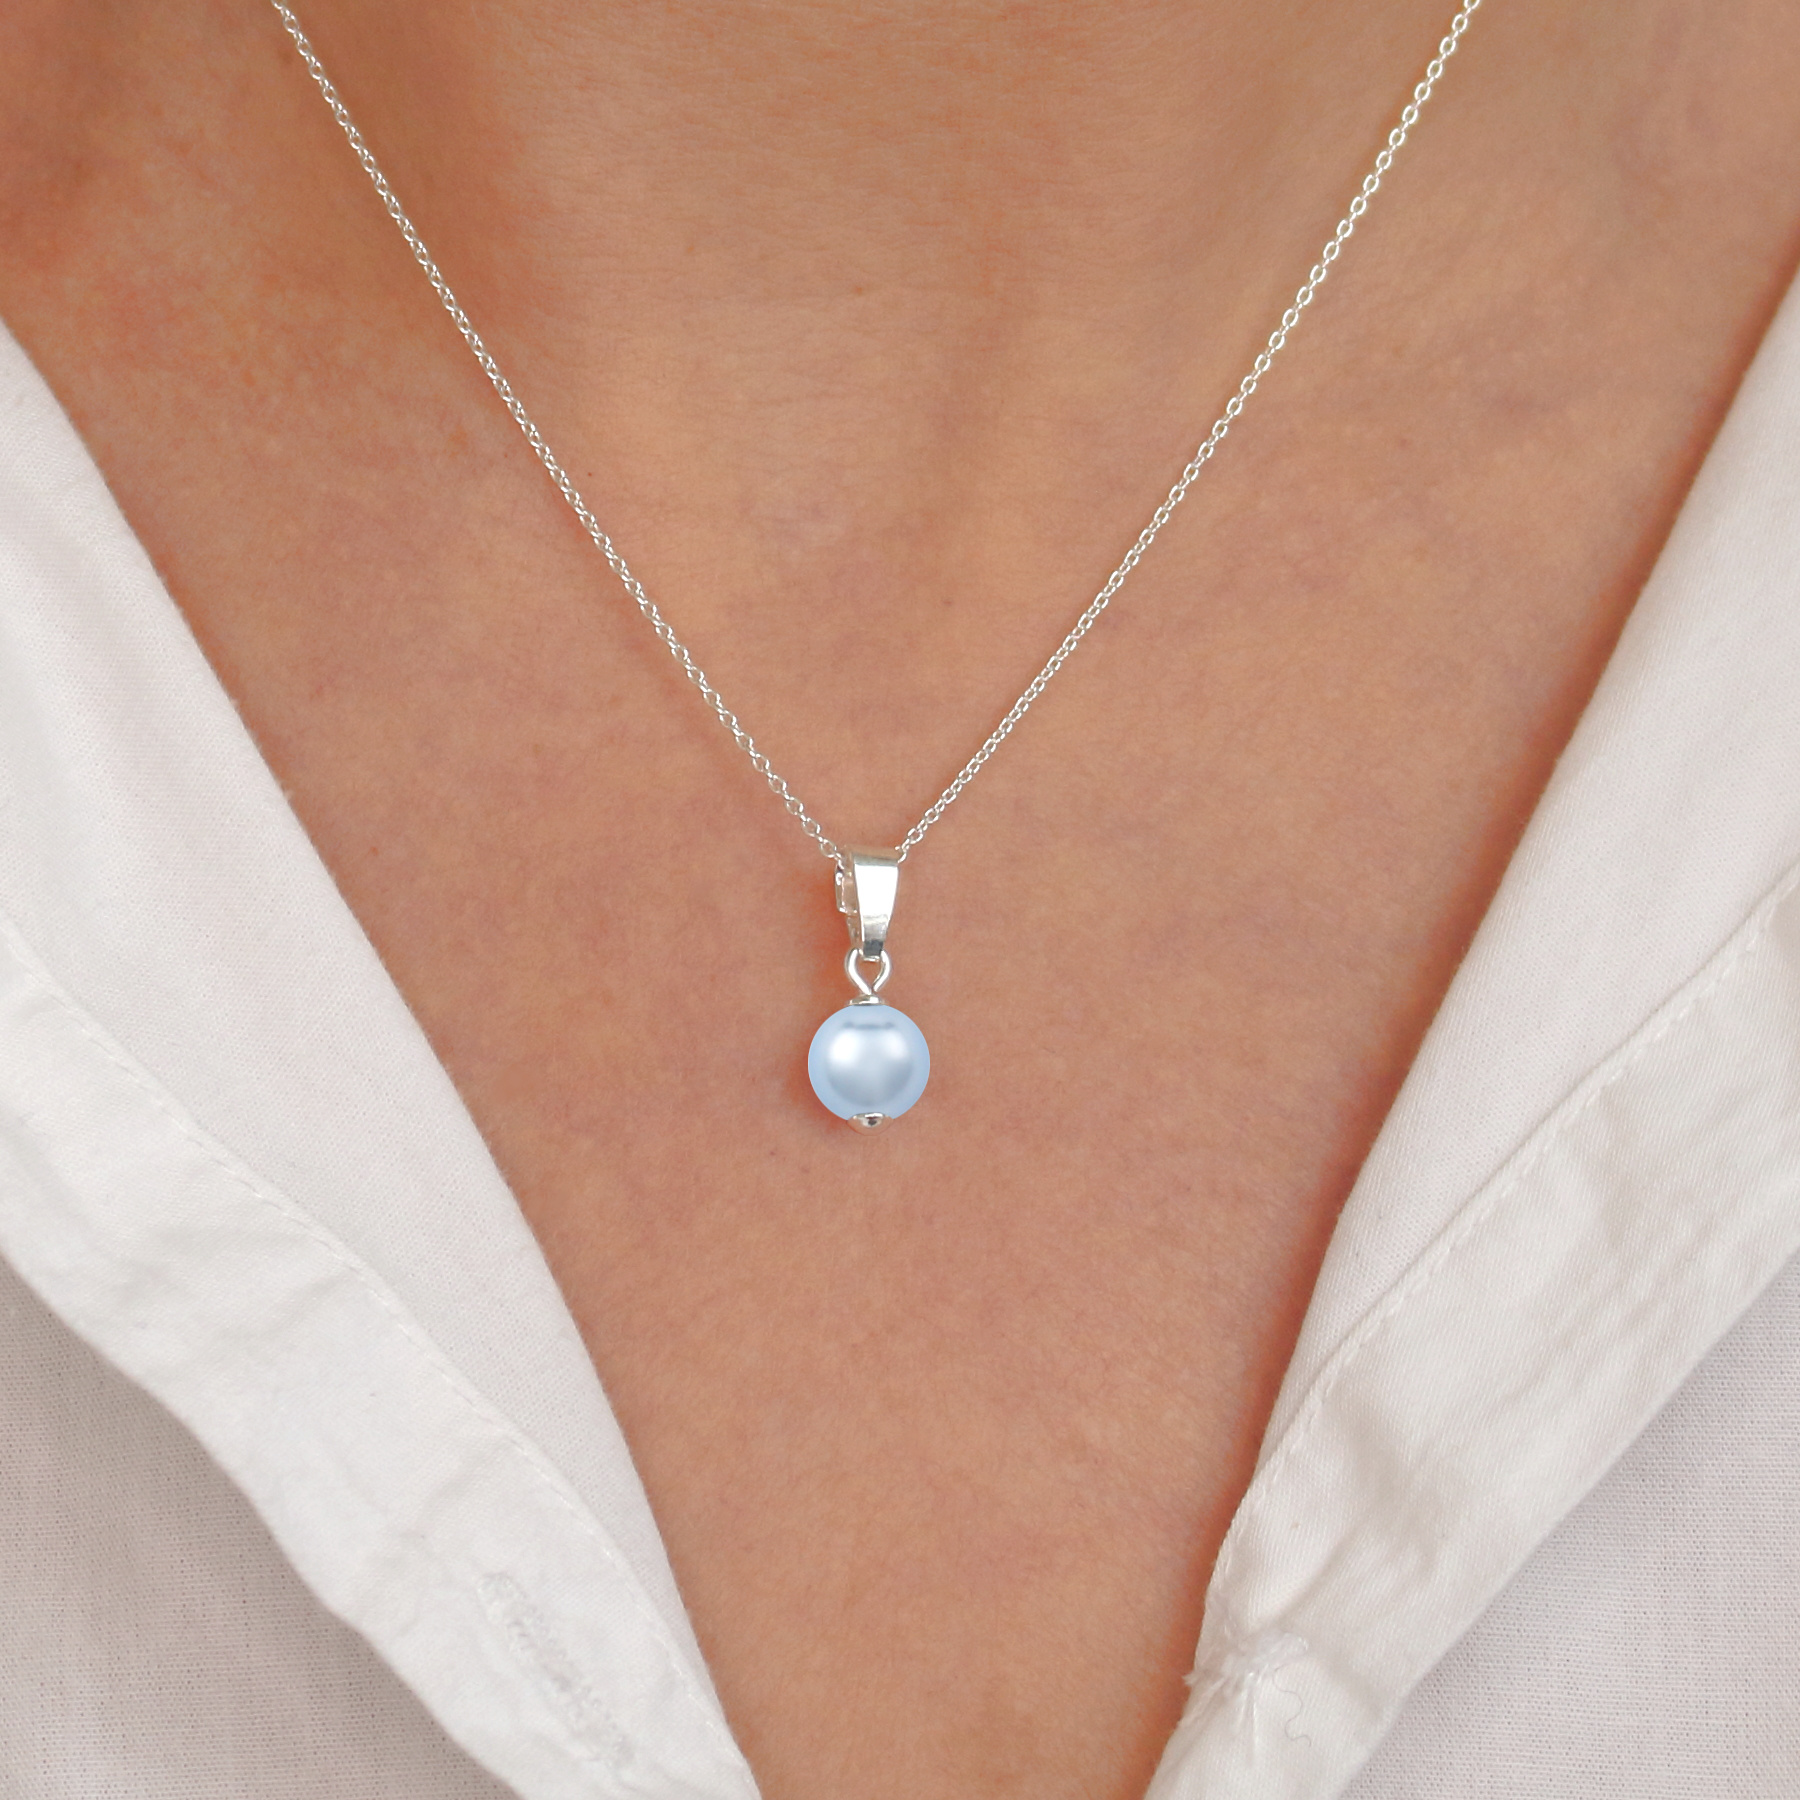 Halskette Silber hellblau Perle Anhänger - ARLIZI 1528 - ARLIZI Schmuck  Webshop